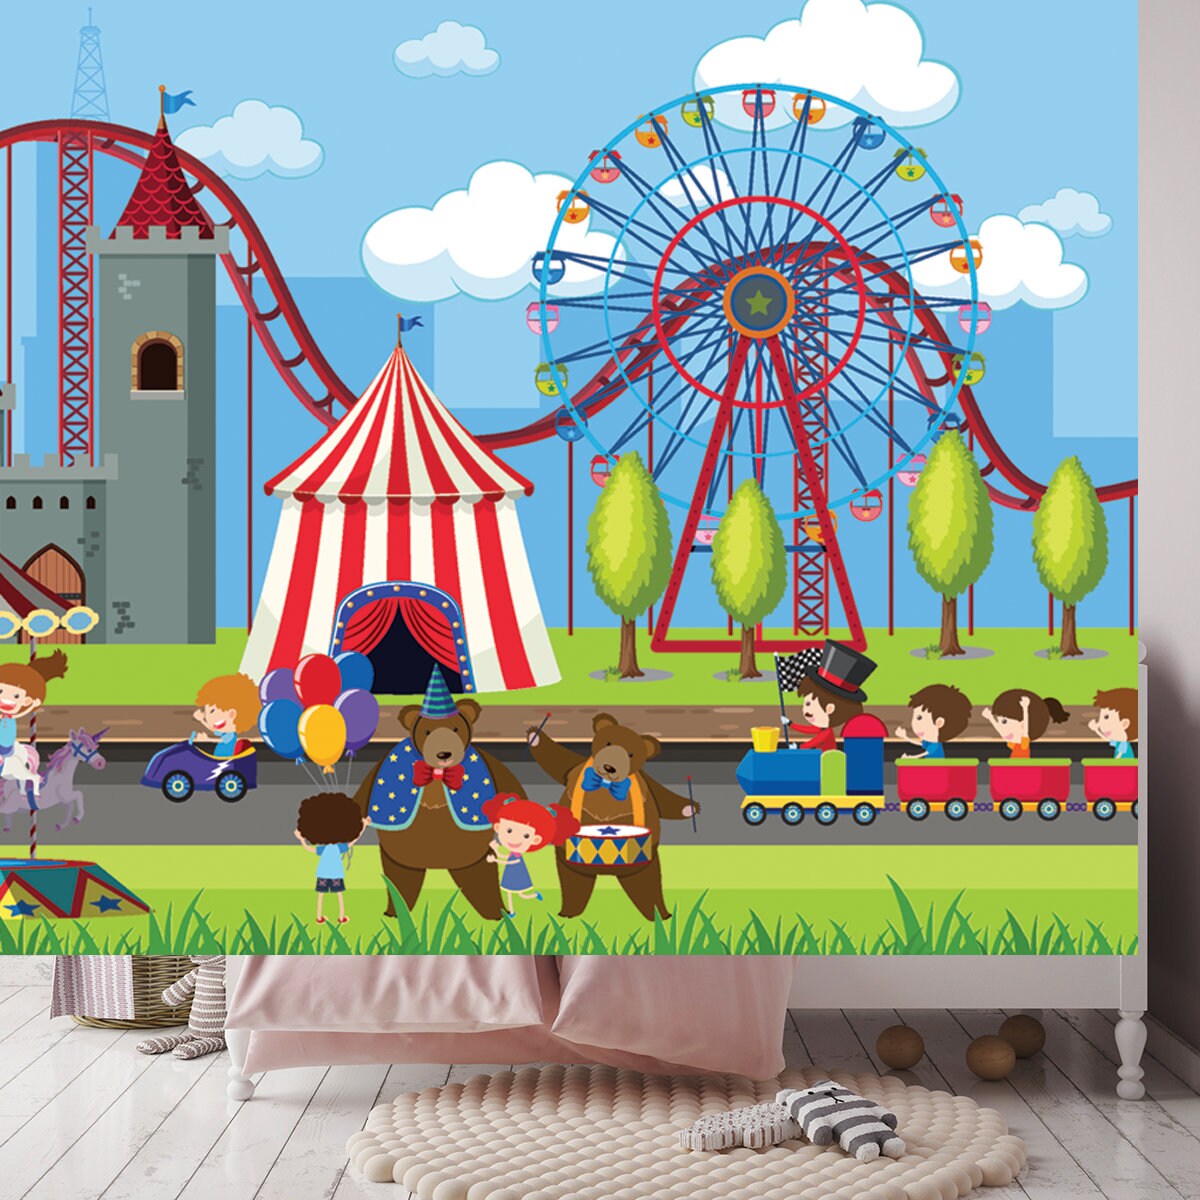 Amusement Park Scene with Ferris Wheel Illustration Wallpaper Girl Bedroom Mural